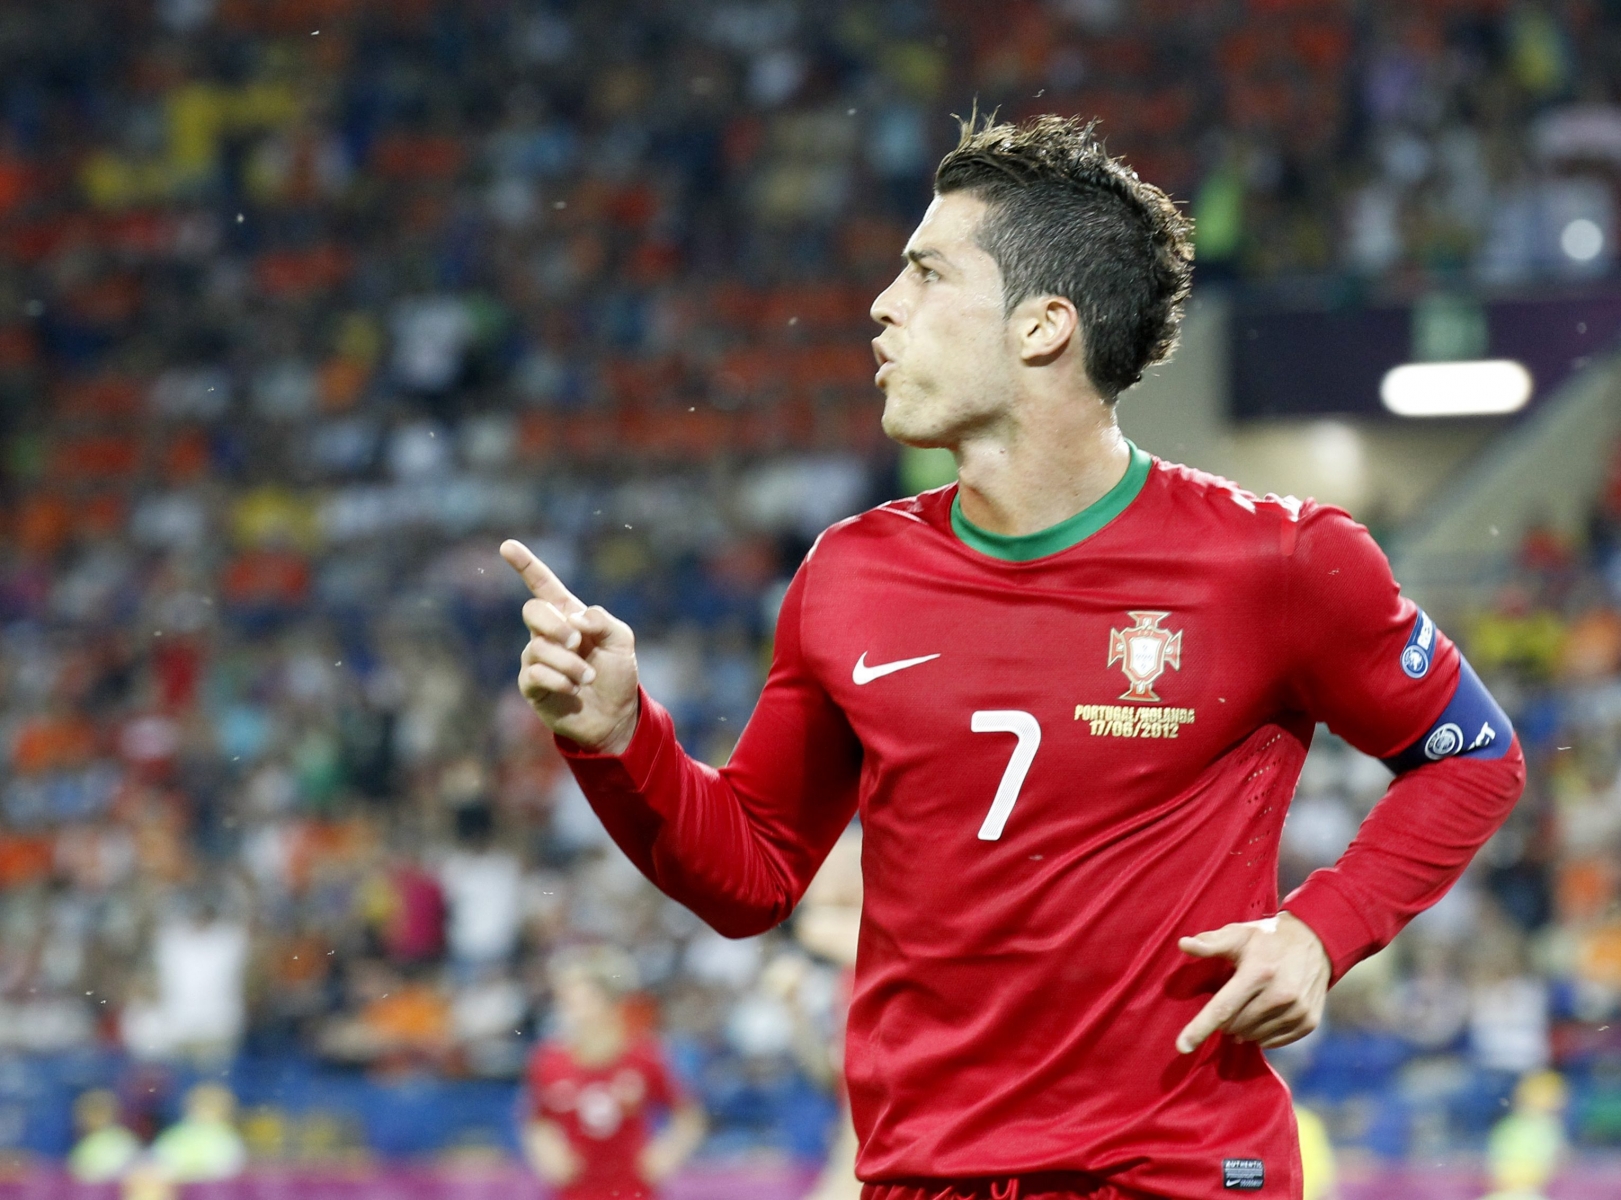 En signant un doublé face aux Pays-Bas, le Portugais Cristiano Ronaldo a enfin répondu aux attentes placées en lui par son équipe et ses supporters lors de cet Euro.